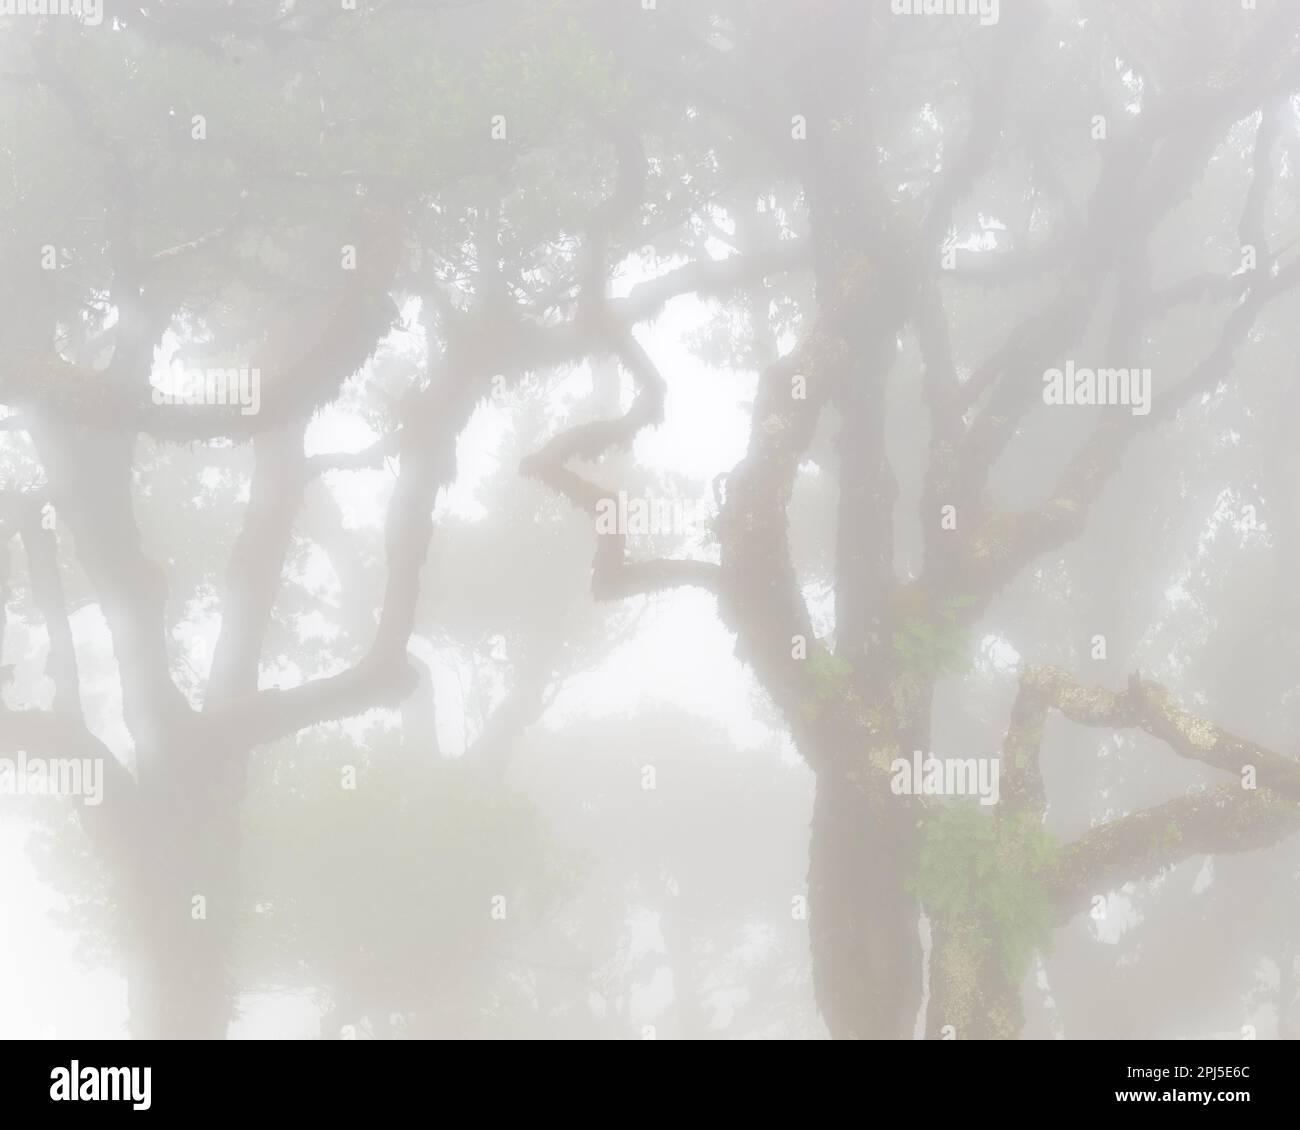 Le brouillard mystérieux couvre une forêt luxuriante de laurisilva, entourée de contreforts et de prairies vallonnées dans une atmosphère de tranquillité paisible. Banque D'Images